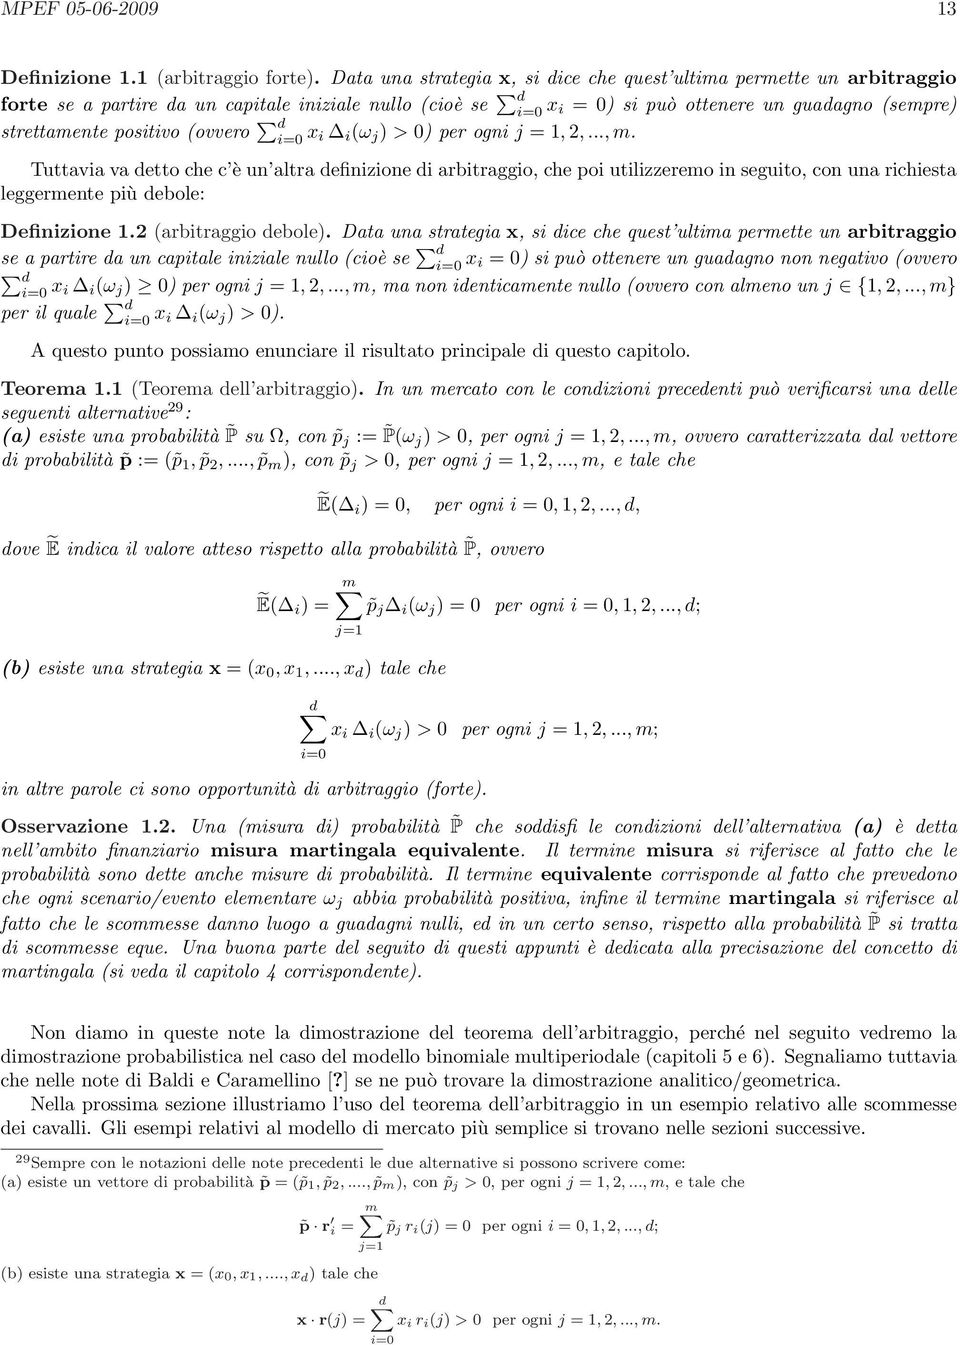 positivo (ovvero d i= x i i (ω j ) > ) per ogni j = 1, 2,..., m.